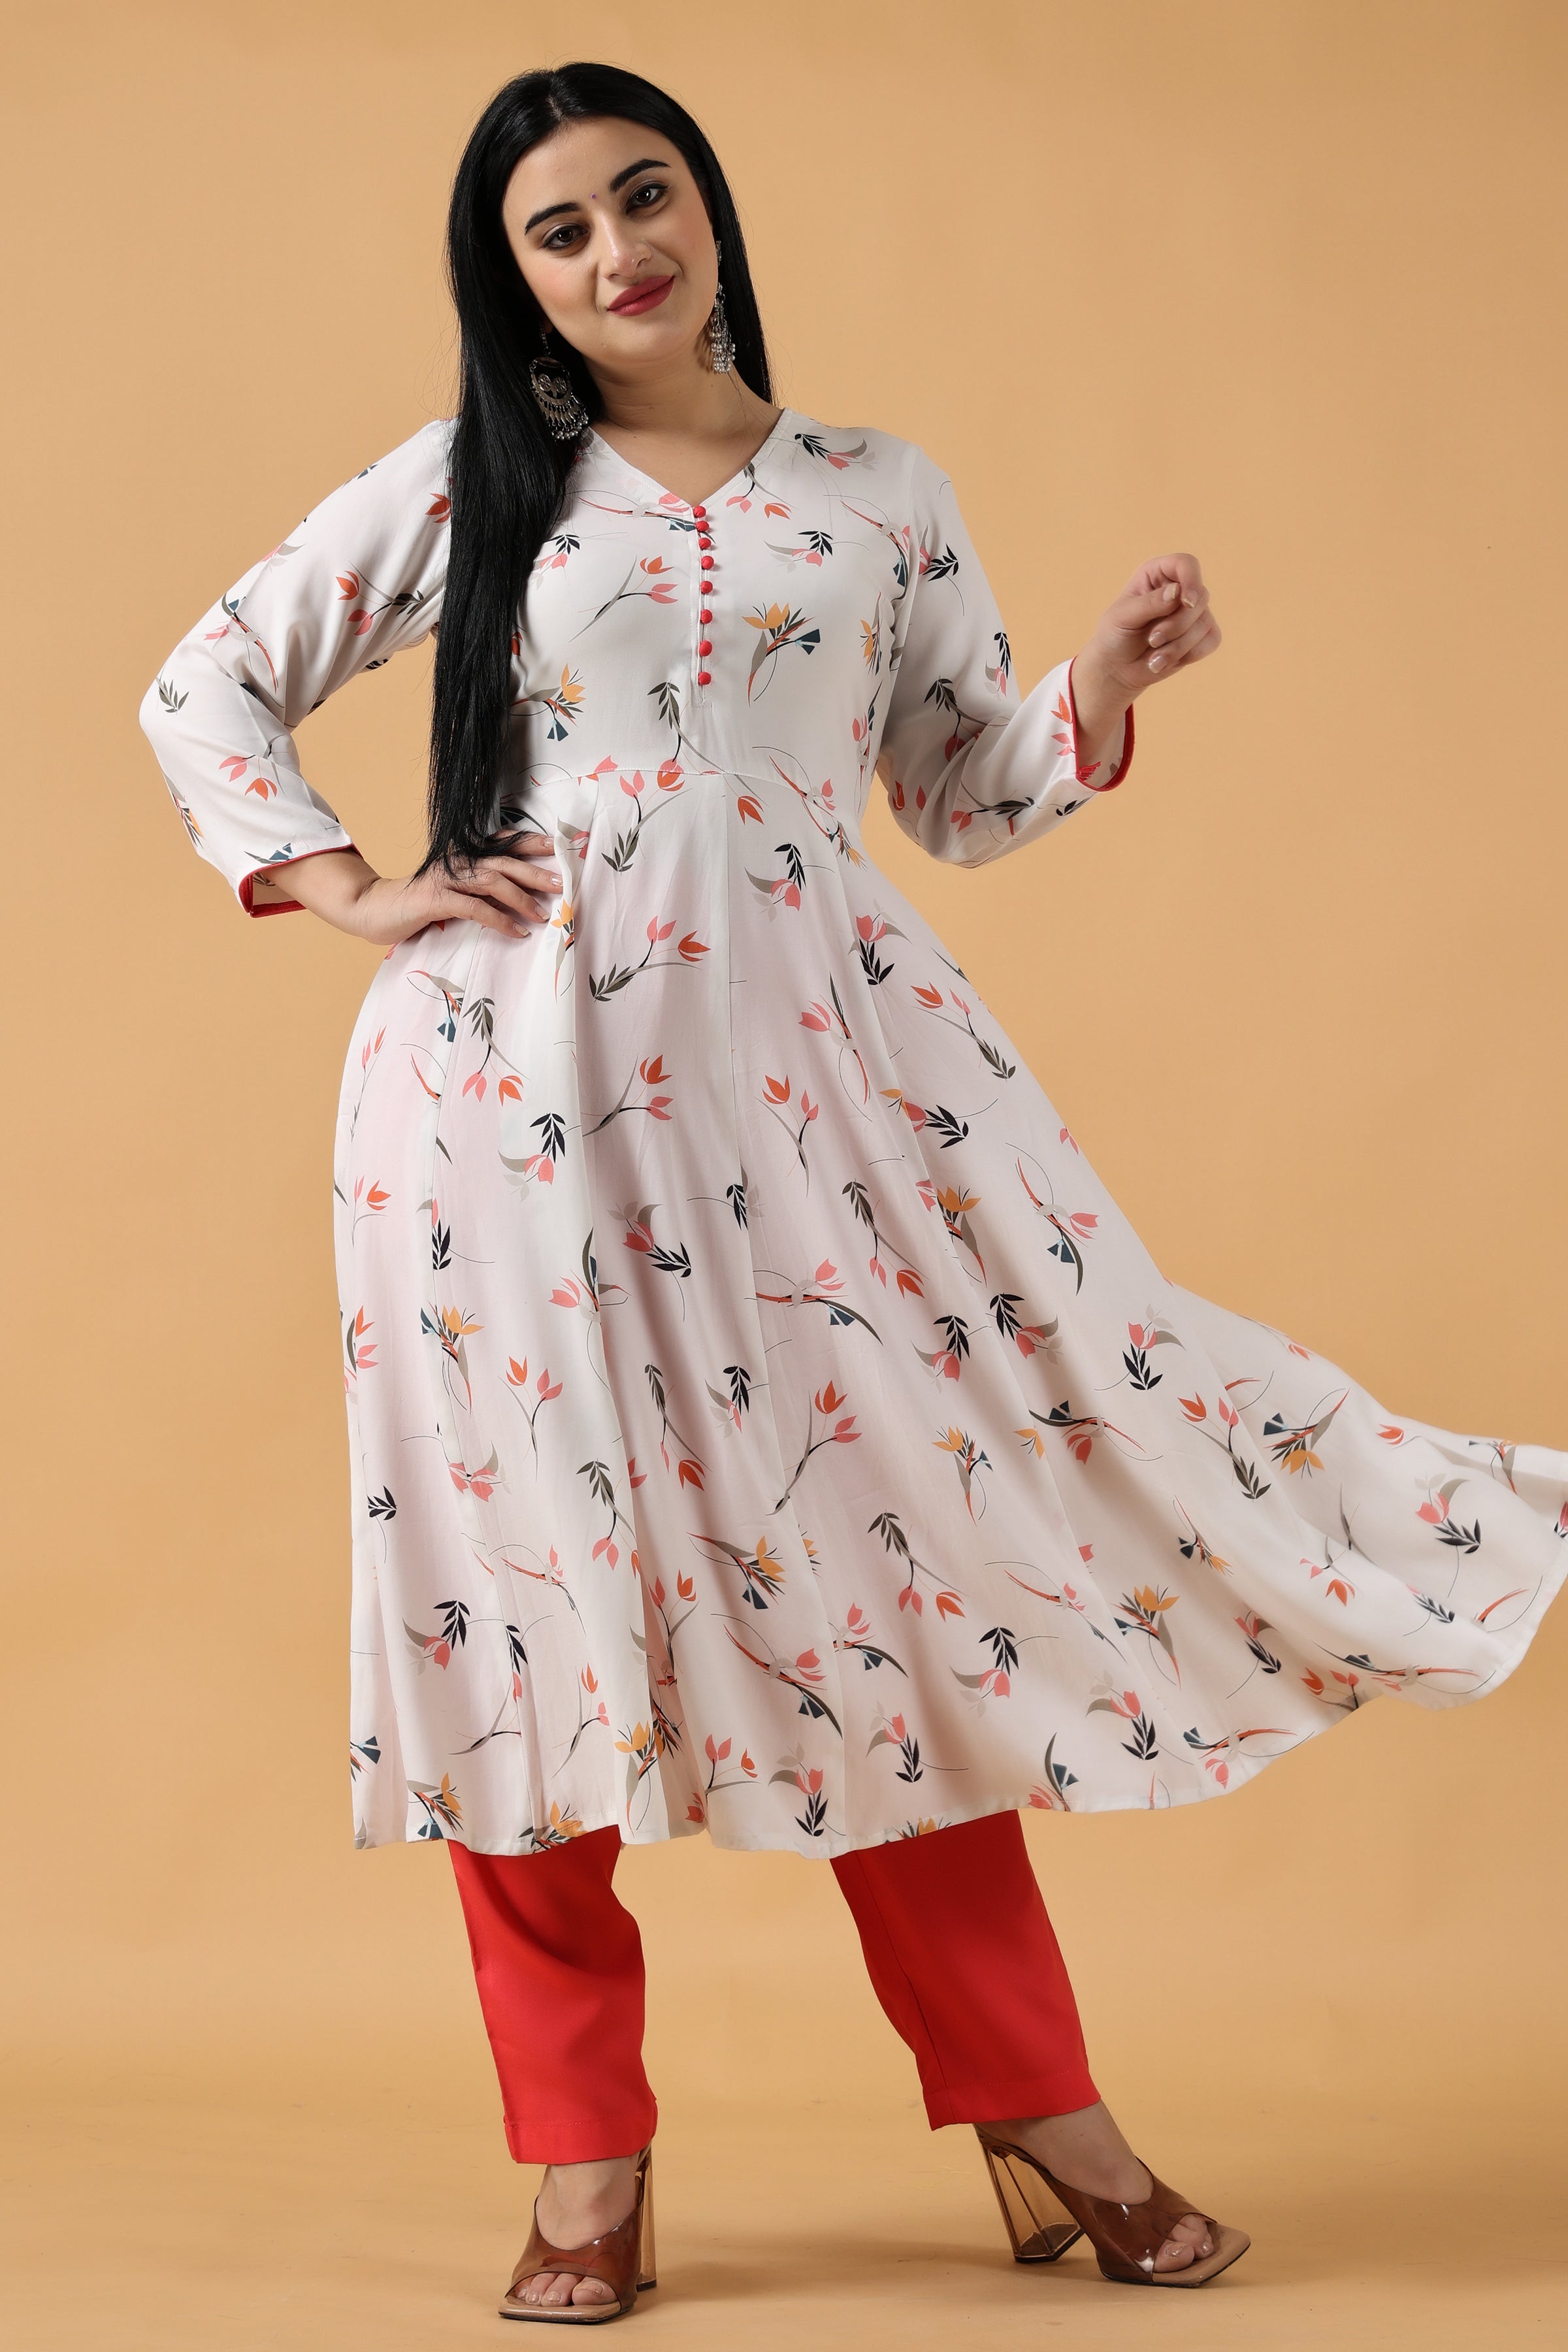 Salwar Kameez - Buy Latest Salwar Suit Online Shopping for Women |  G3Fashion | Blue anarkali, Anarkali suit, Long sleeve dress